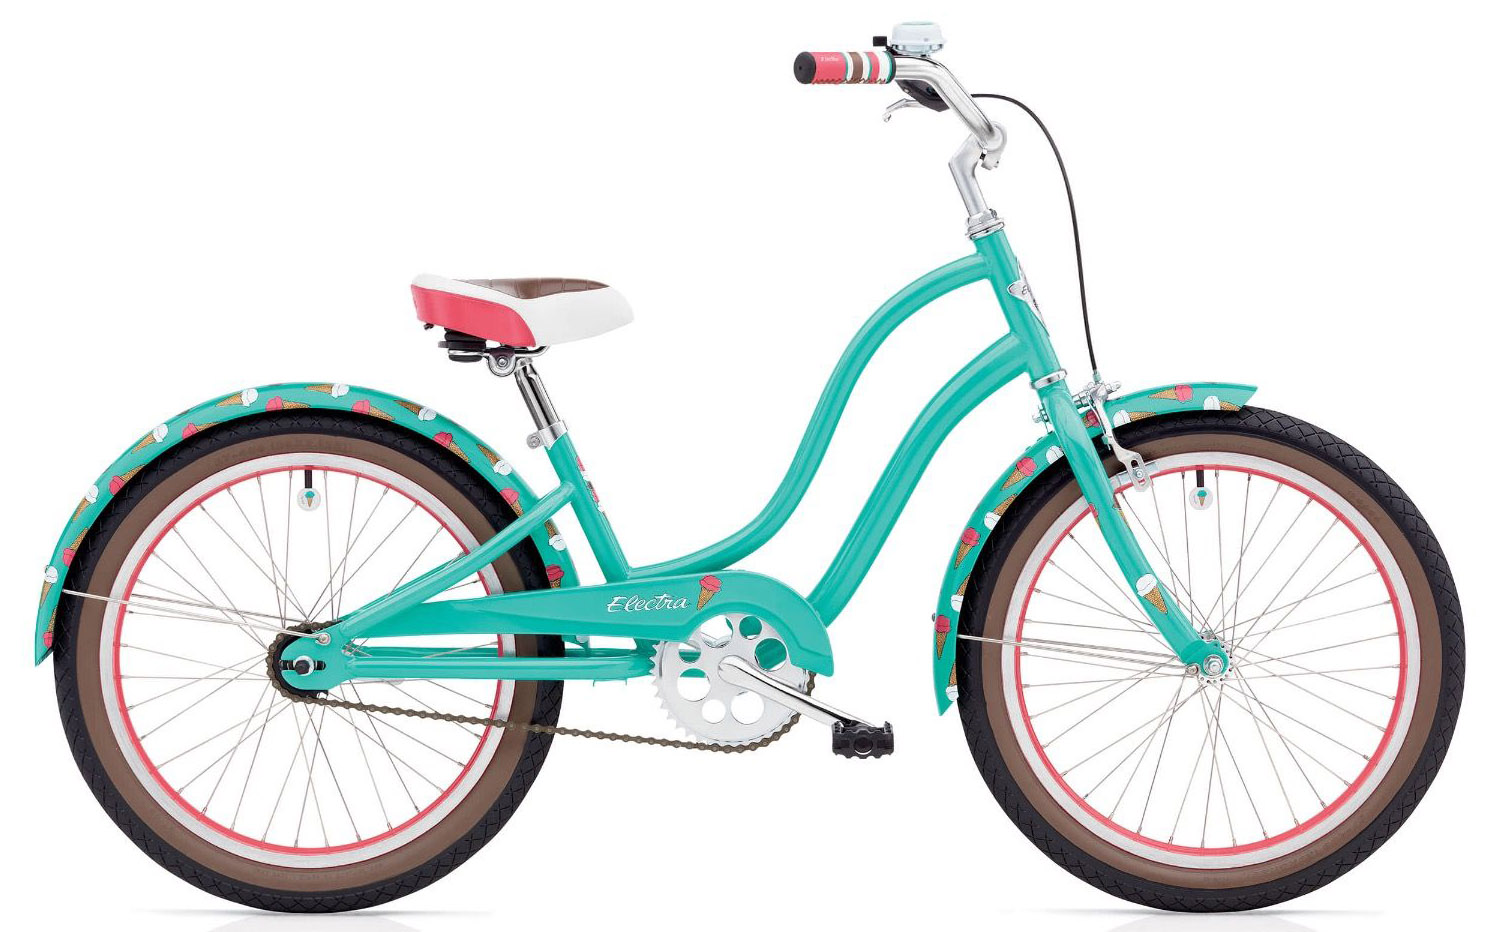  Отзывы о Детском велосипеде Electra Sweet Ride 1 20 2020